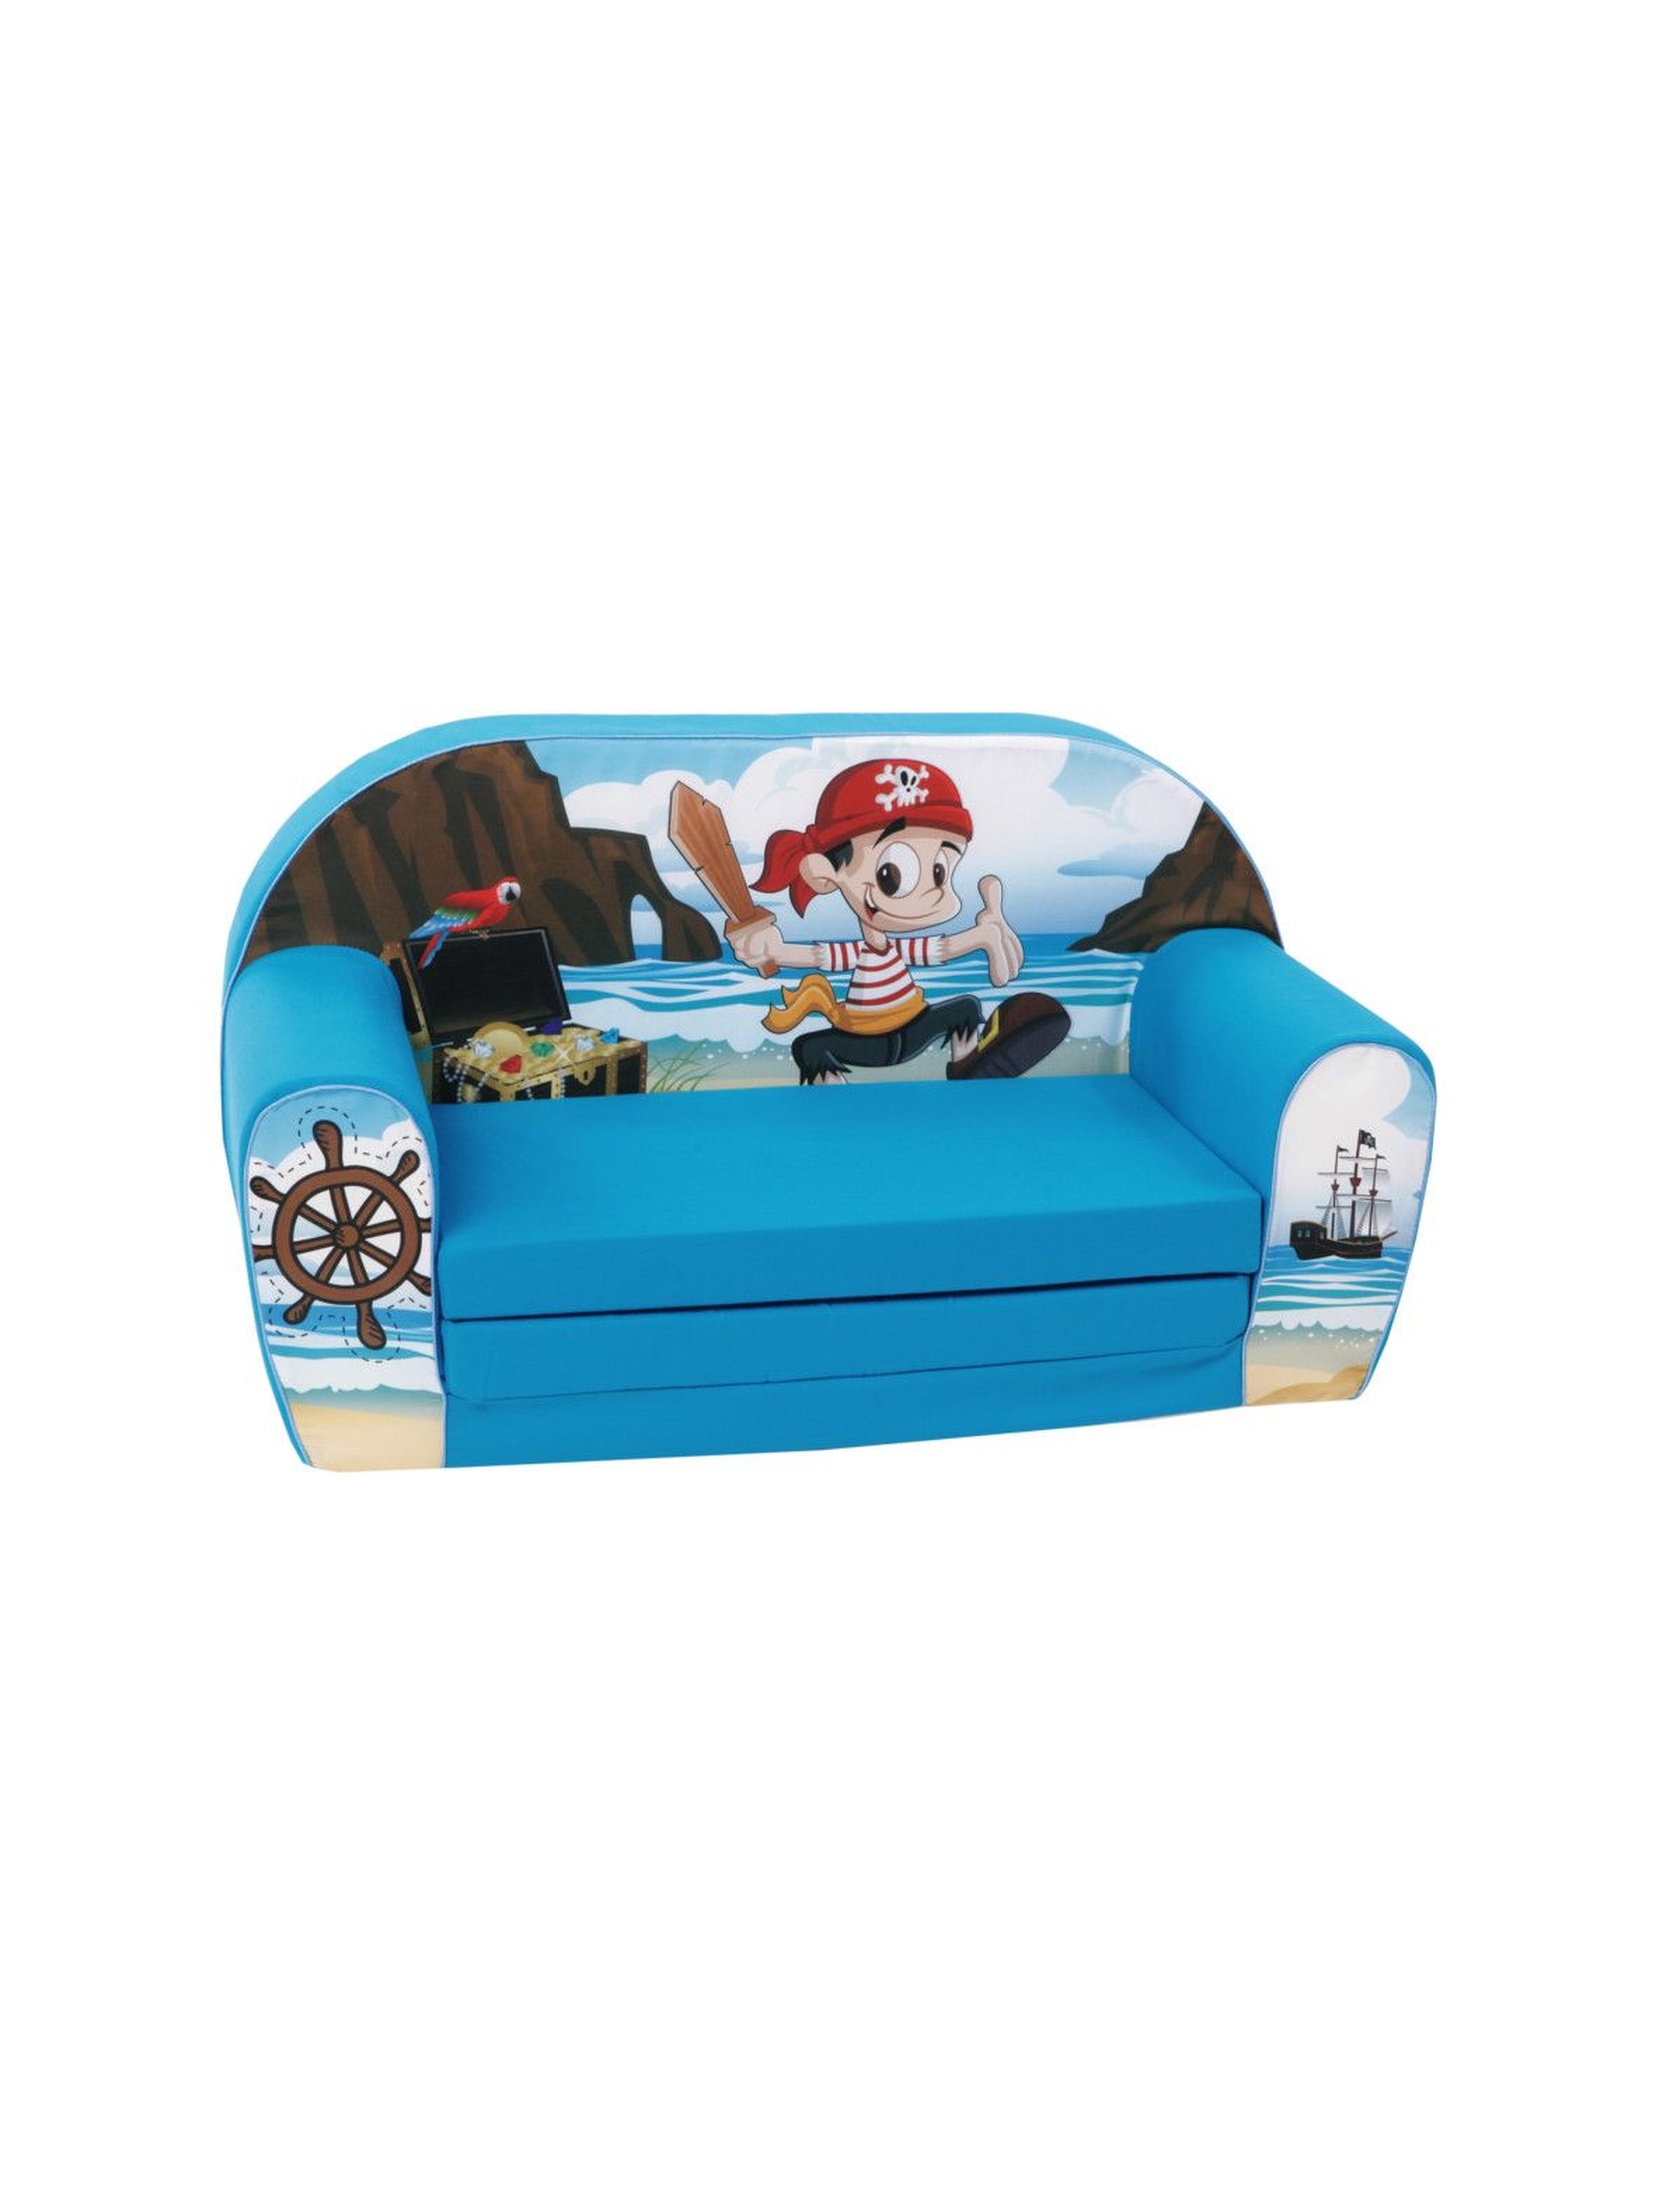 Rozkładana sofa piankowa dla chłopca Delsit Pirat